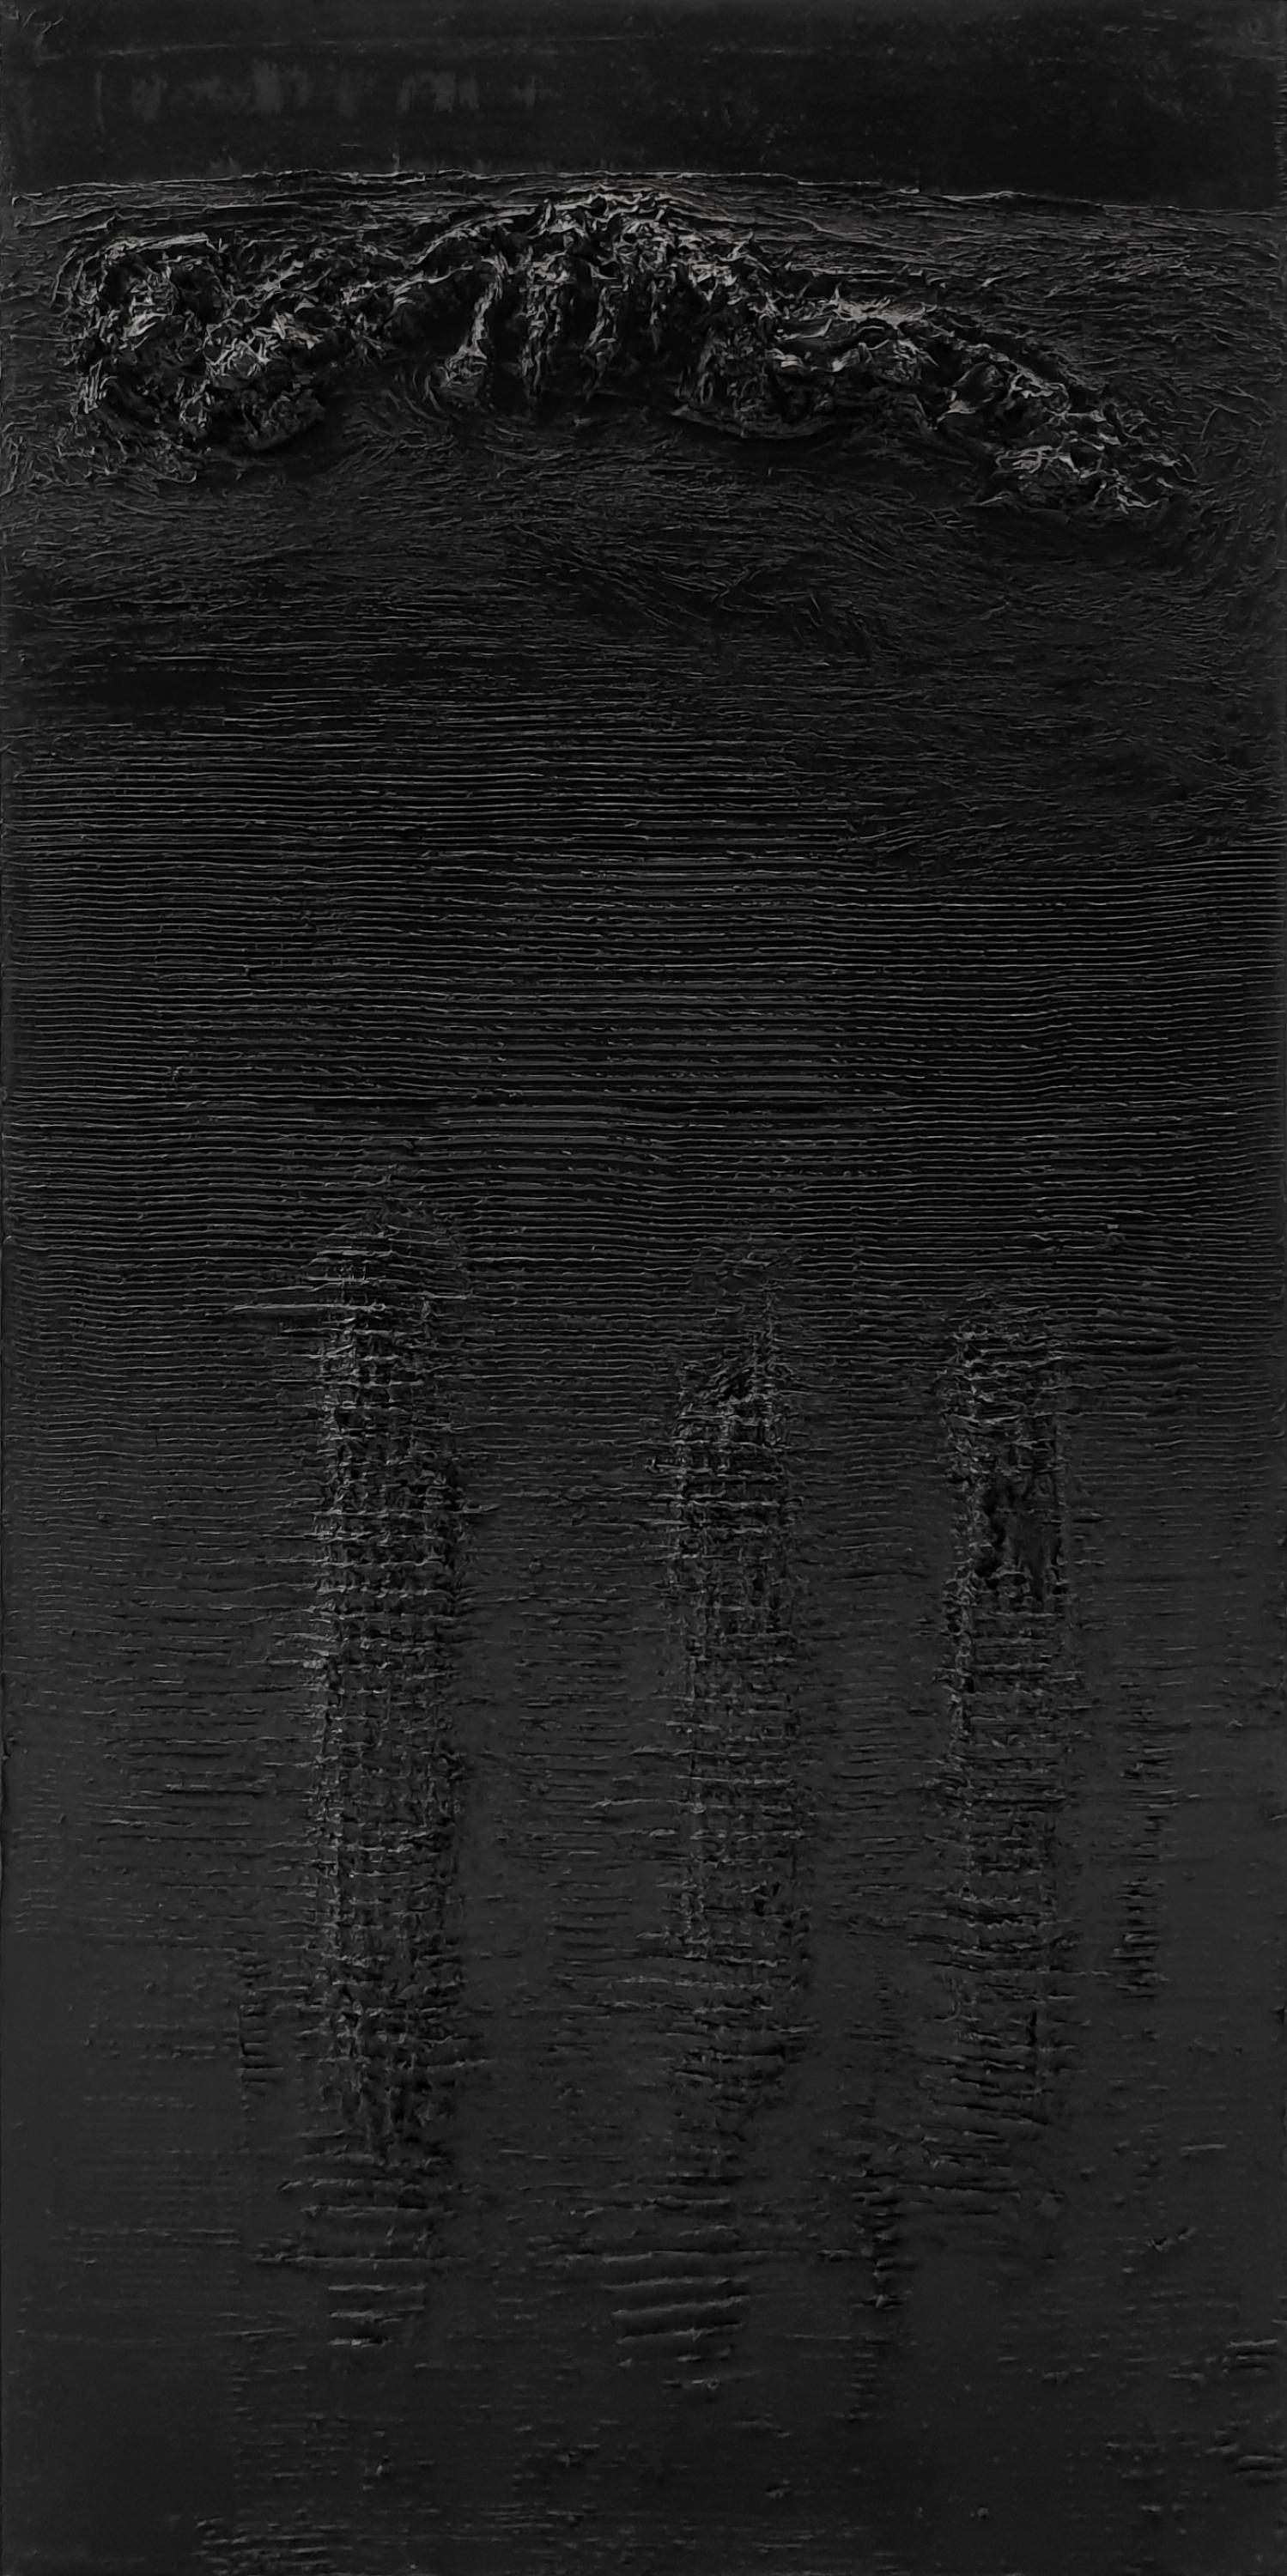 Landscape Painting Zsolt Berszán - Sans titre 4 - Contemporain, Noir, Monochrome, Peinture Abstraite, Organic, Life